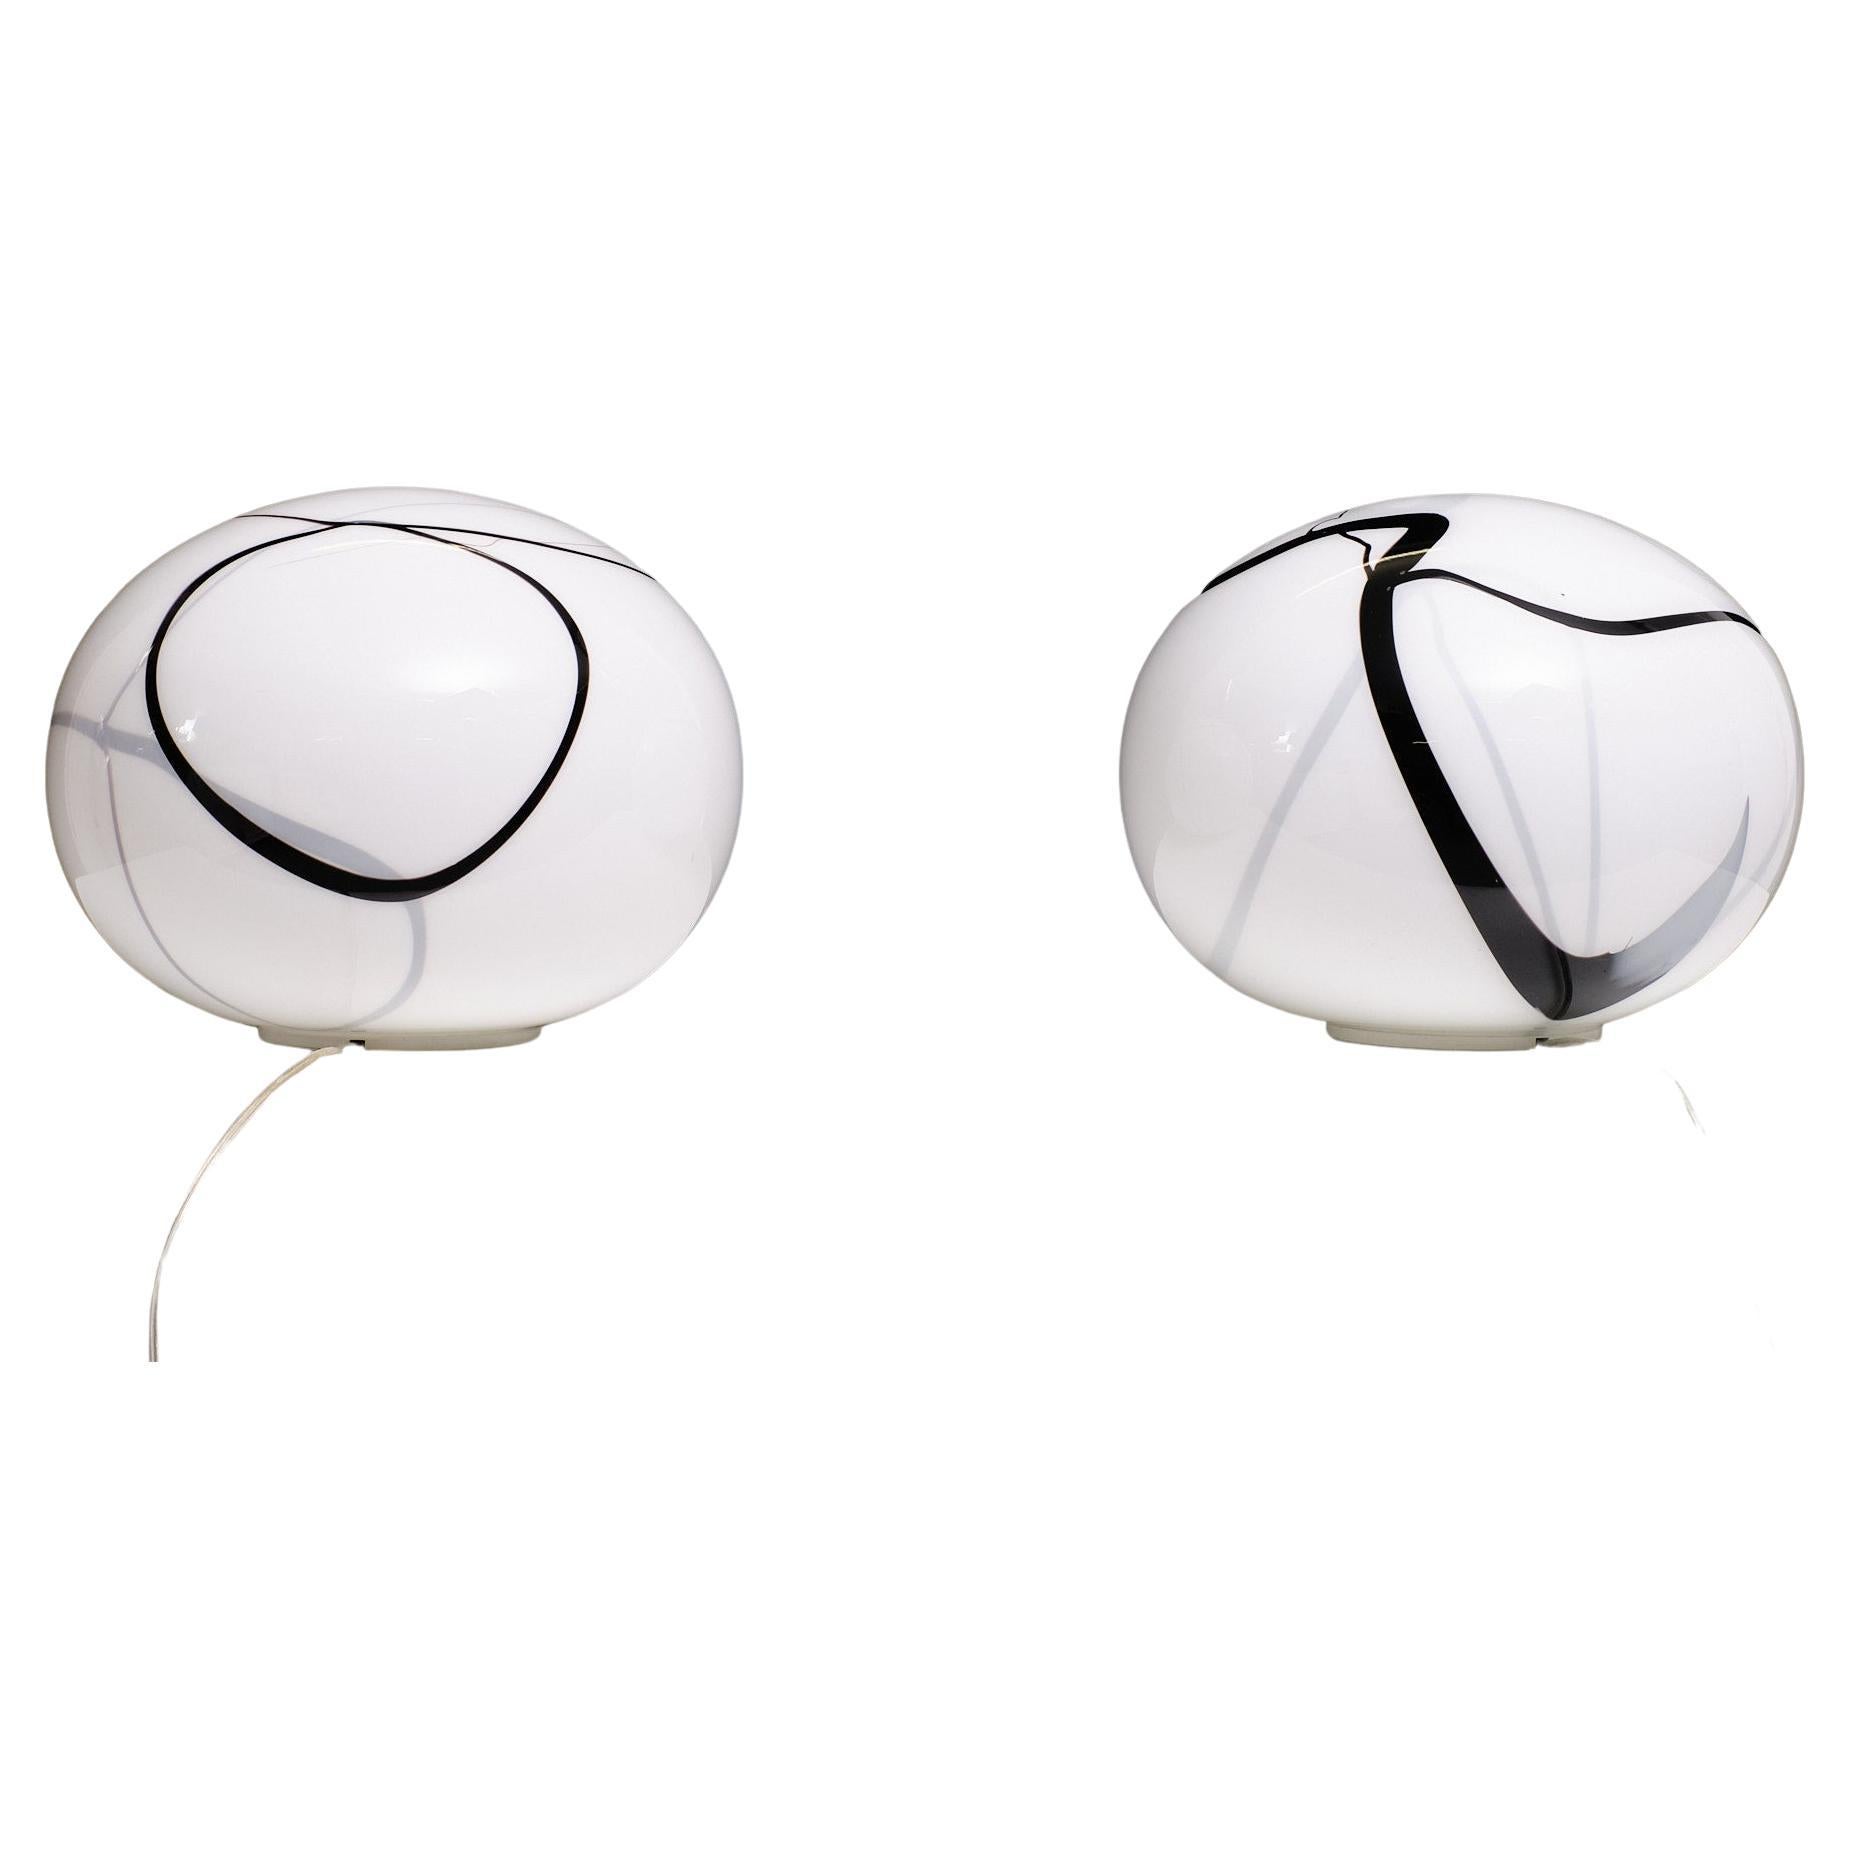 Deux fantastiques lampes de table Zebra Globe . Soufflé et décoré à la main. Fabriqué par
Zijlstra Tiel, une petite entreprise hollandaise, n'a pas la même lampe de table. 
Ensemble rare . Une grande ampoule E27 est nécessaire. 
N'hésitez pas à nous